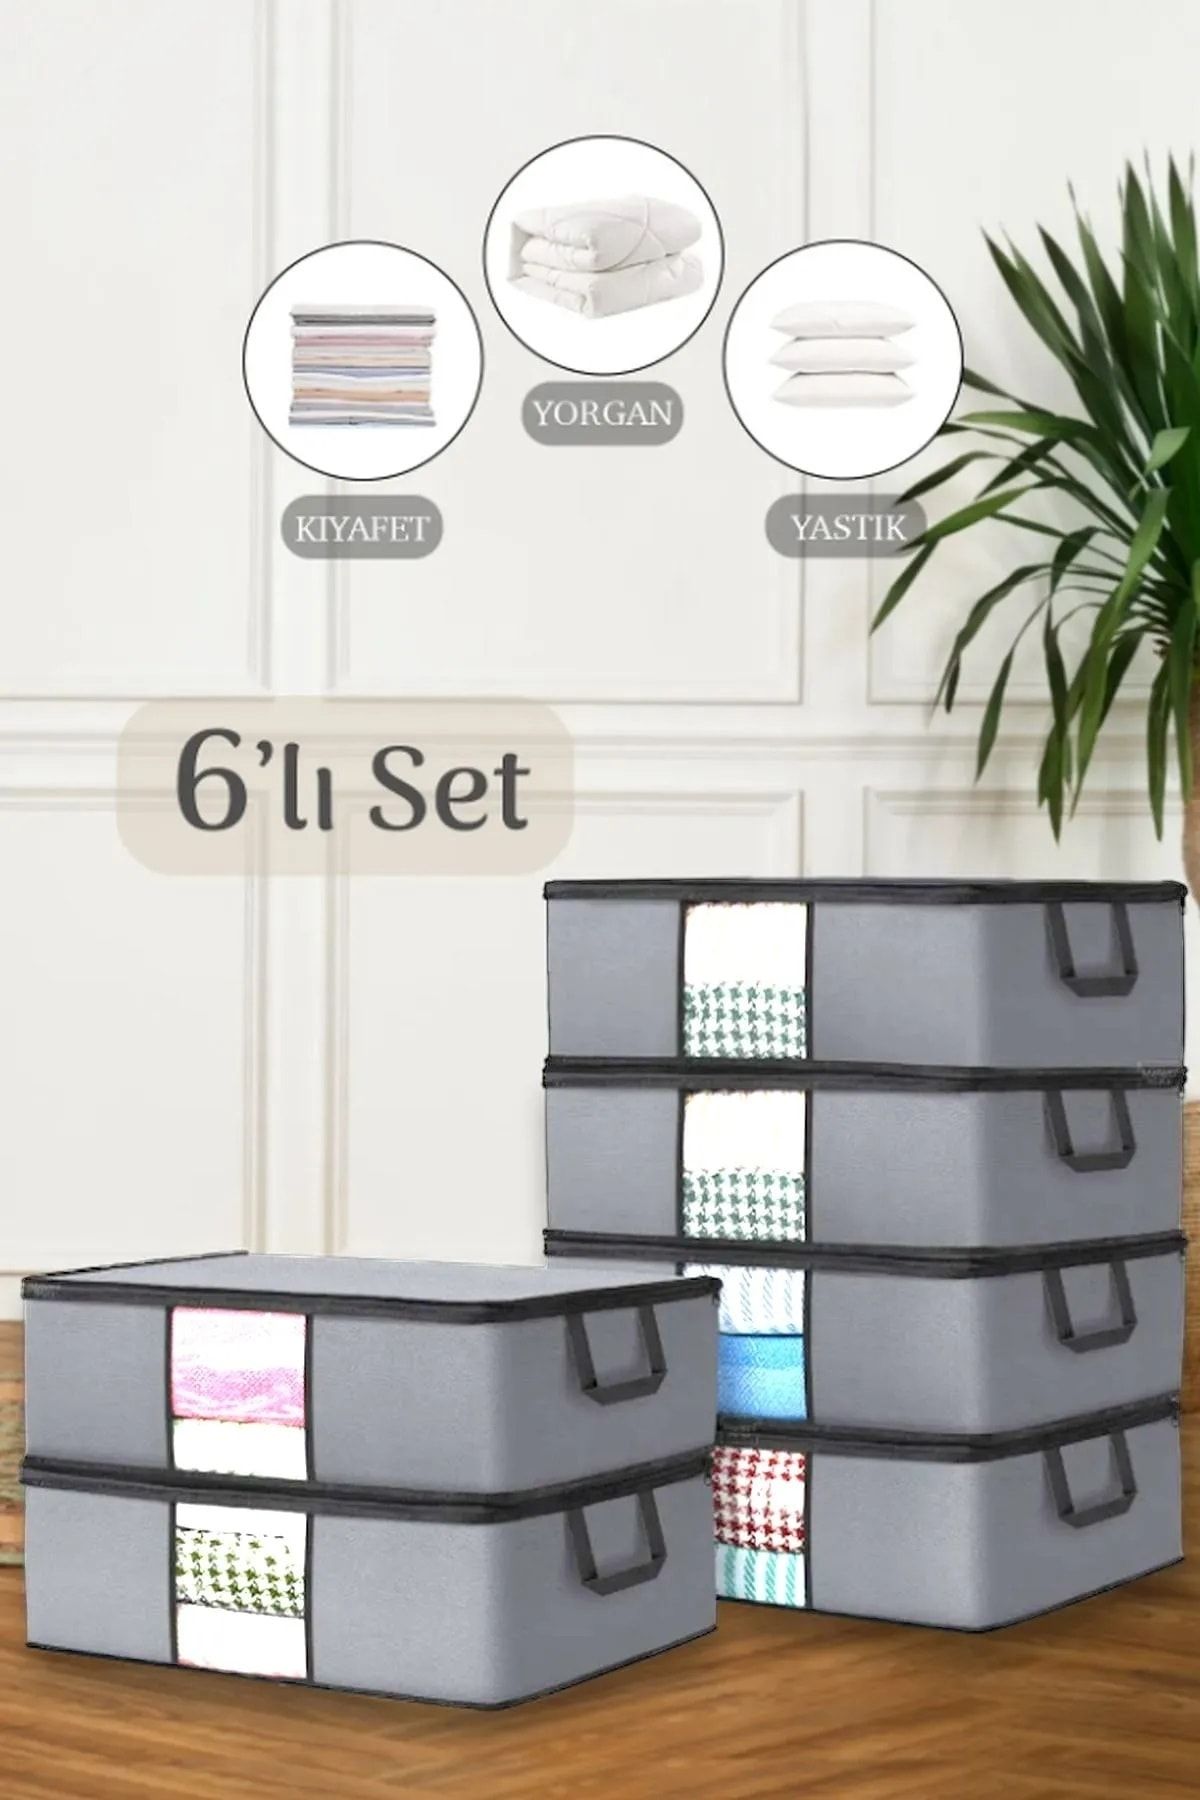 Meleni Home 6'lı Büyük Boy Baza Altı Hurç - Pencereli Yastık Kıyafet Saklama Hurcu 64 X 45 X 22 Cm Gri